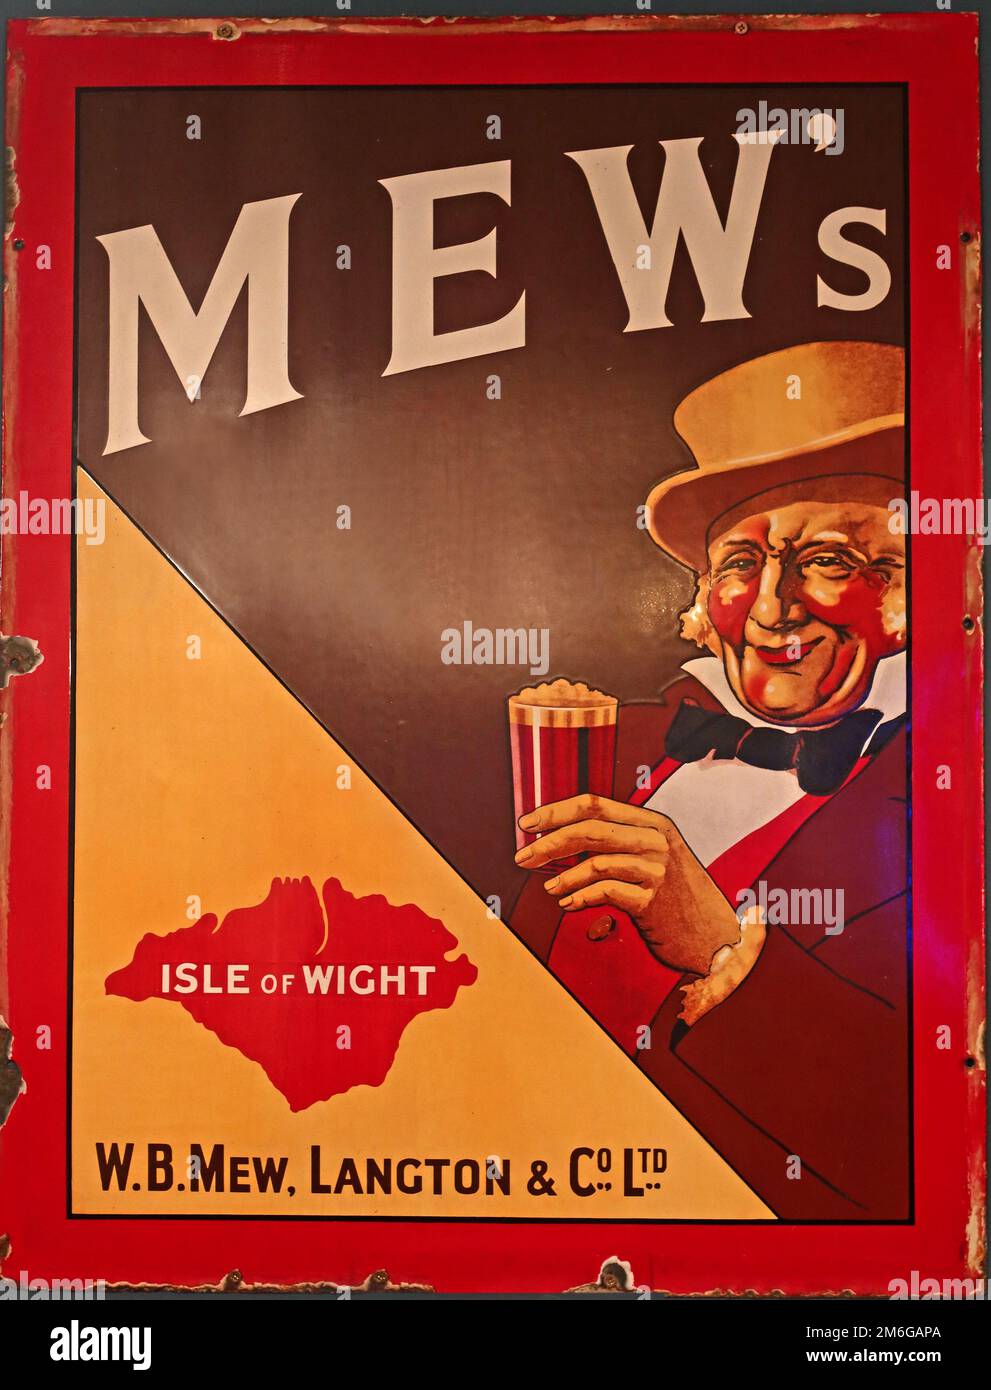 MEW, Mews Isle of Wight Ales, métal émail publicité promotion de bières et de bières Banque D'Images